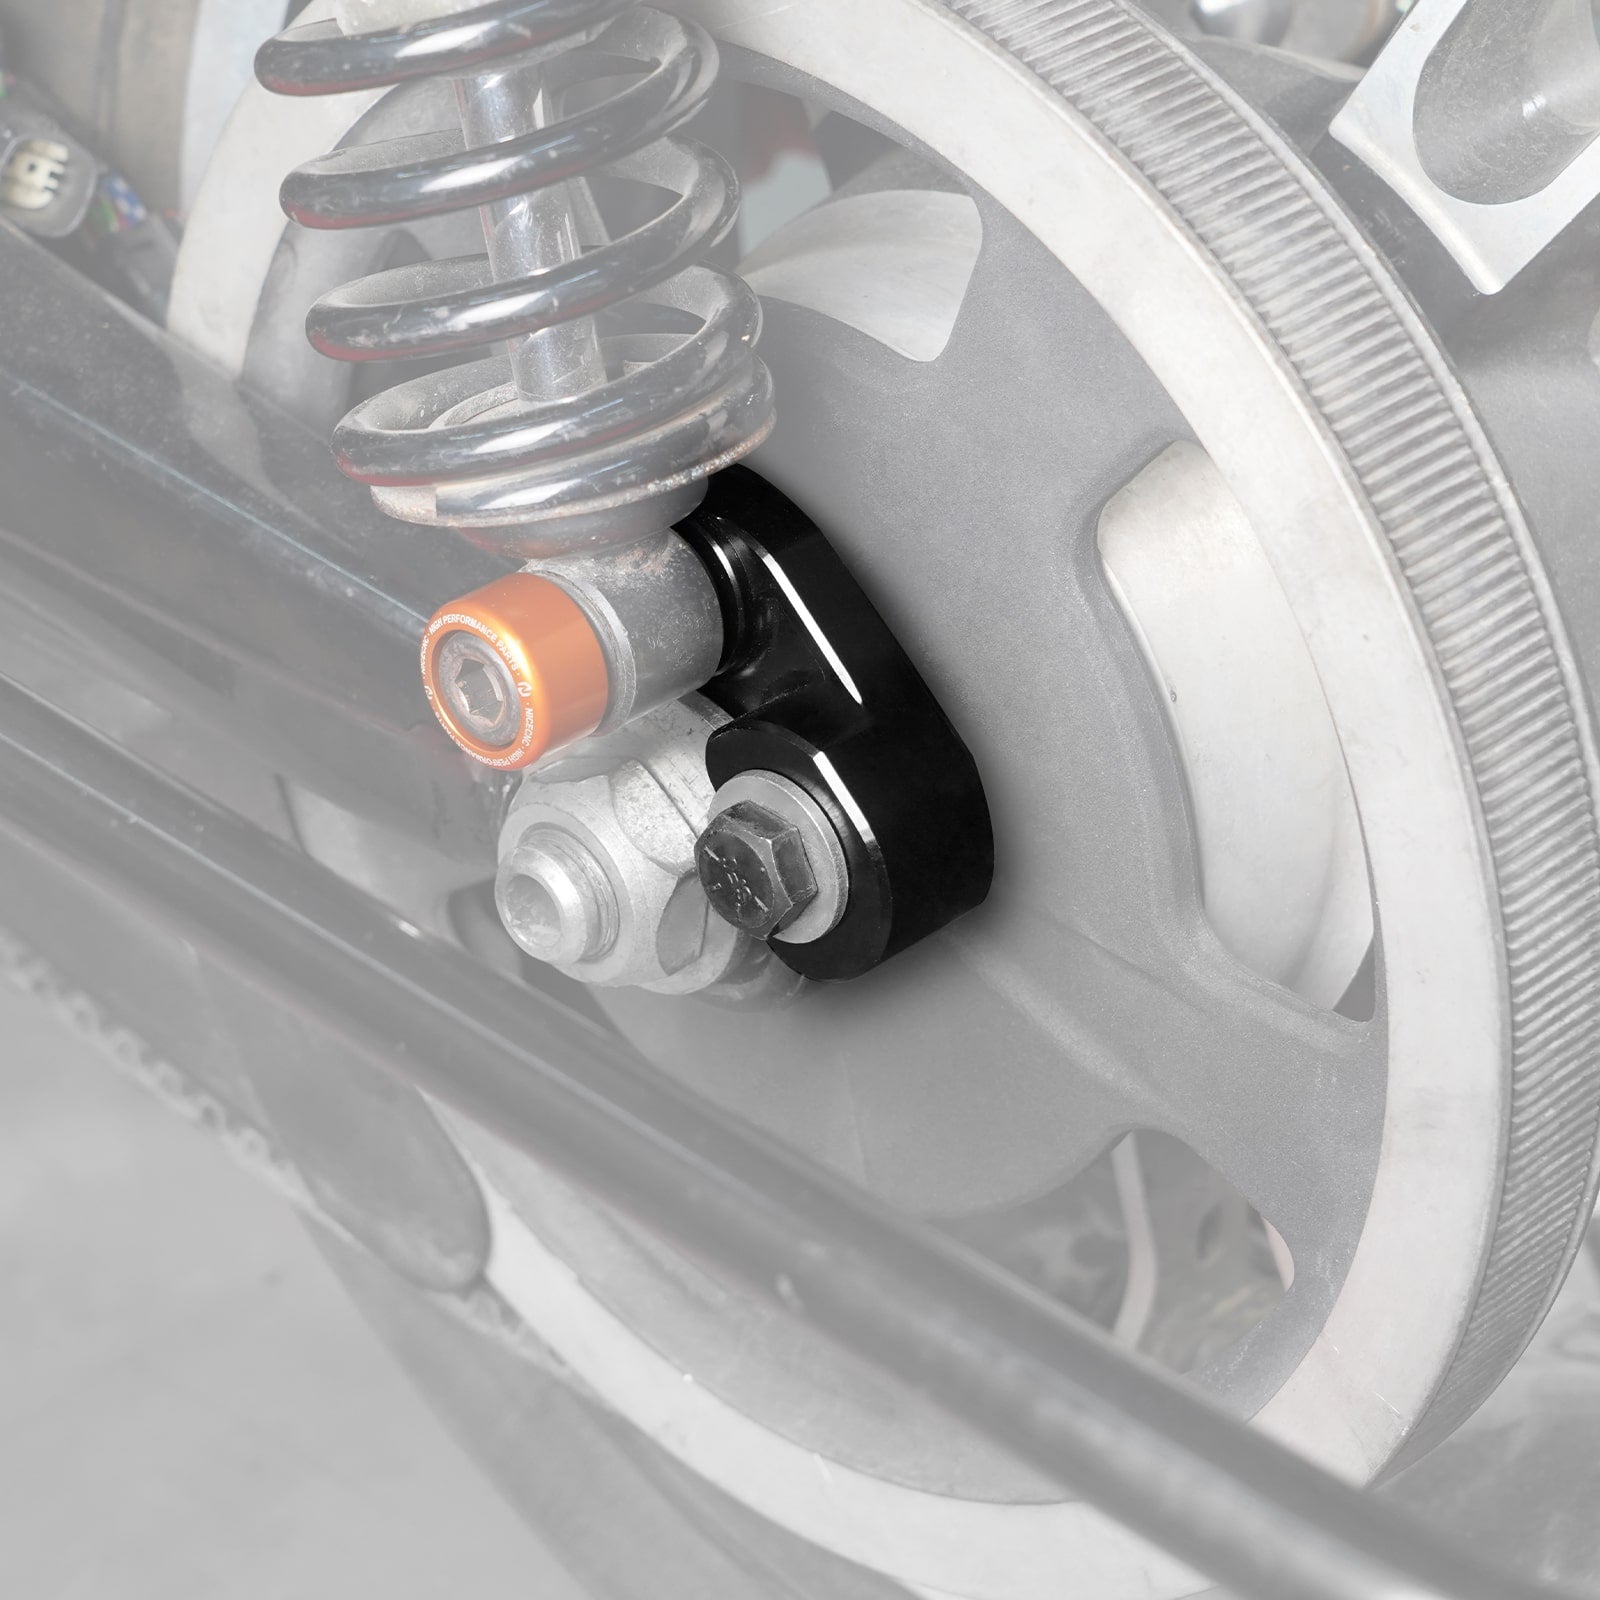 Shock Lift Bracket Rear Suspension Riser Kit For Harley Davidson Road King Electra Glide Street Glide